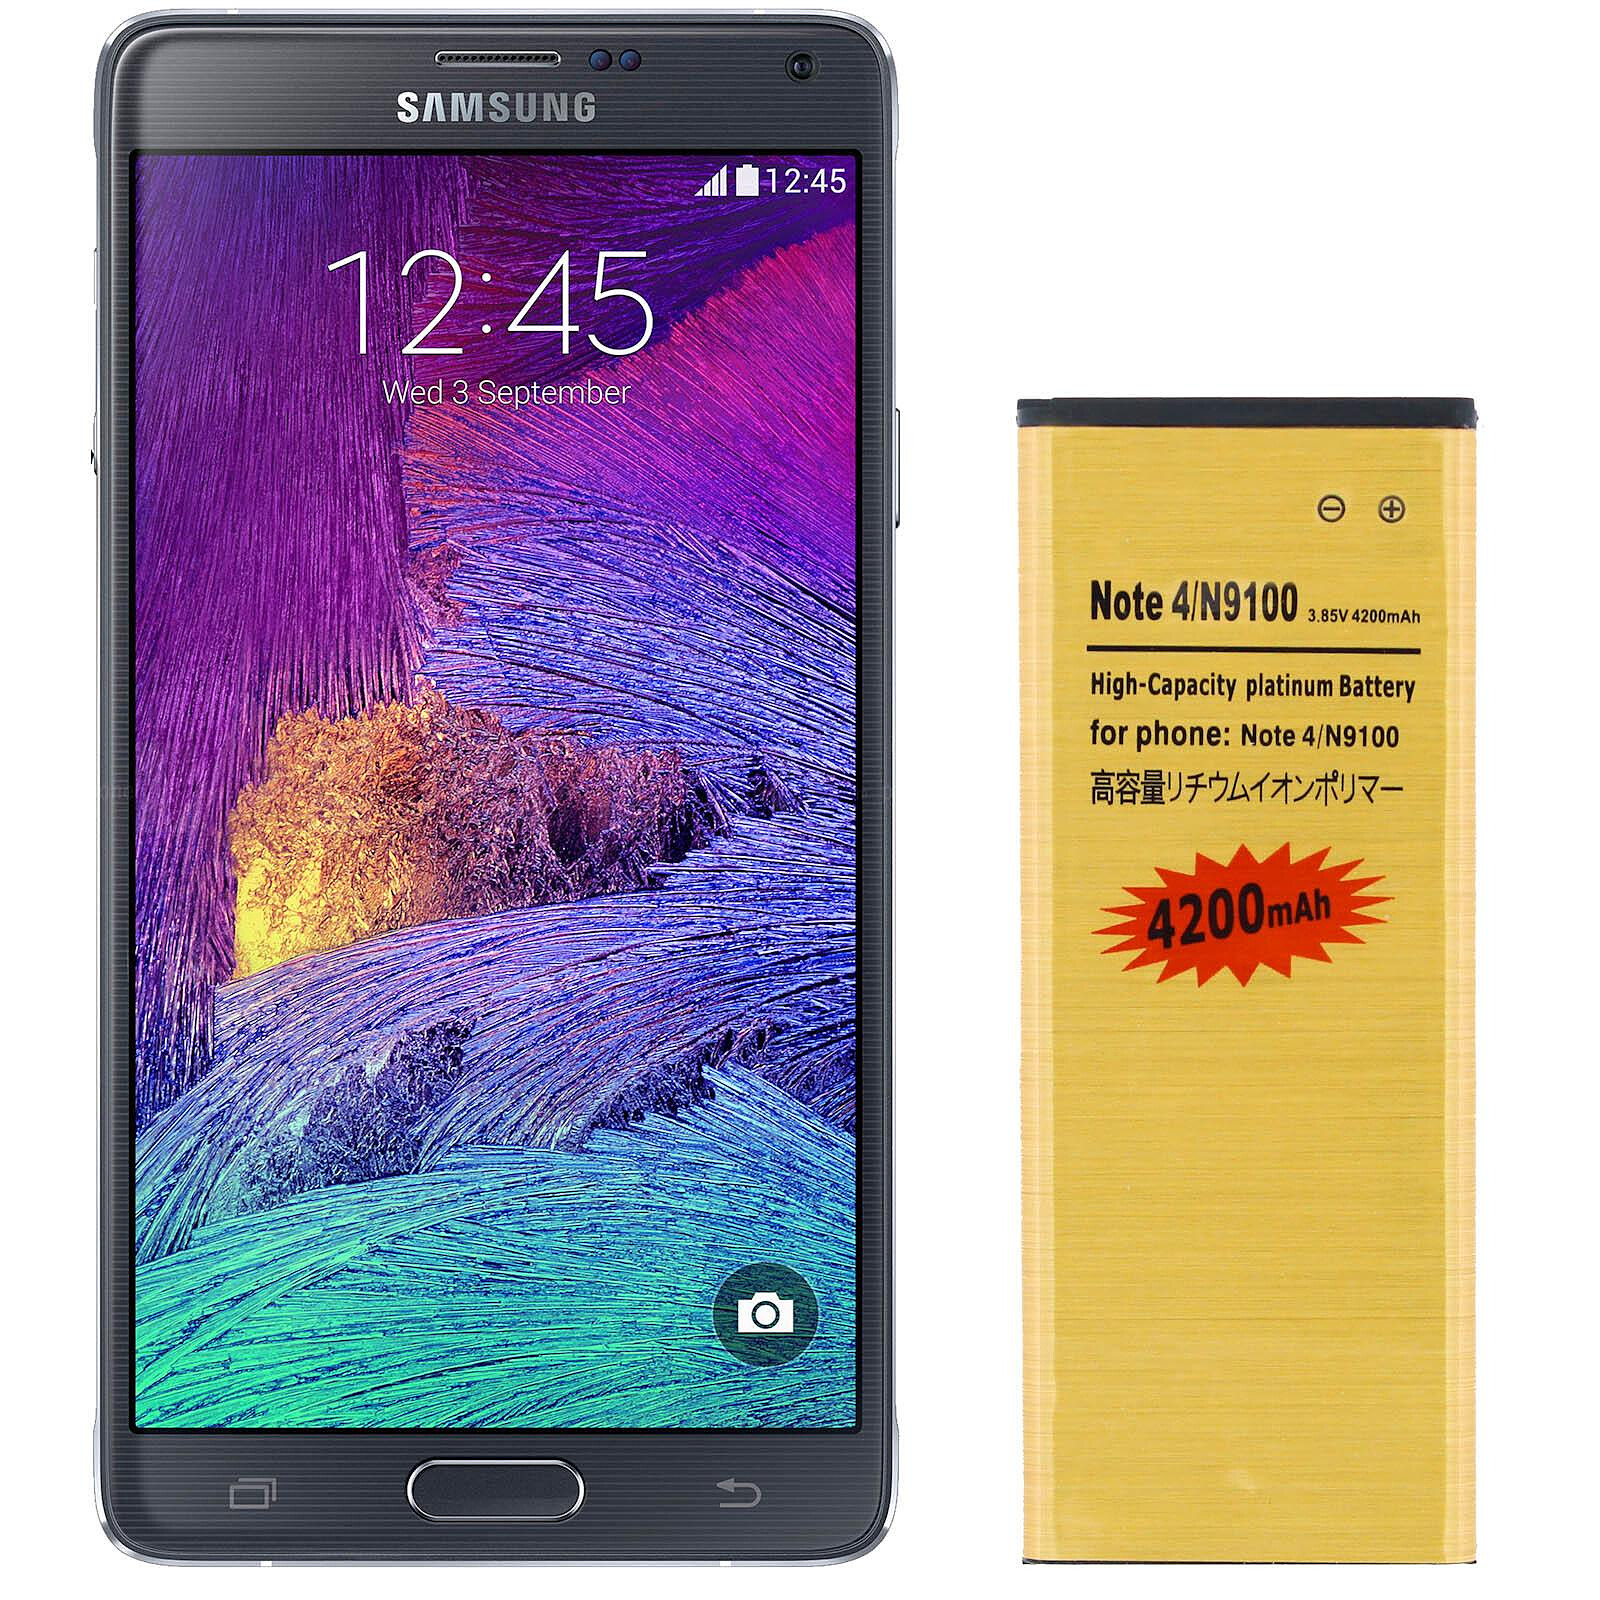 Samsung Batterie Li-ION de Rechange pour Samsung Galaxy S8 Plus avec 3500 mAh pour Samsung Accessoires dorigine Samsung avec Pad daffichage. 